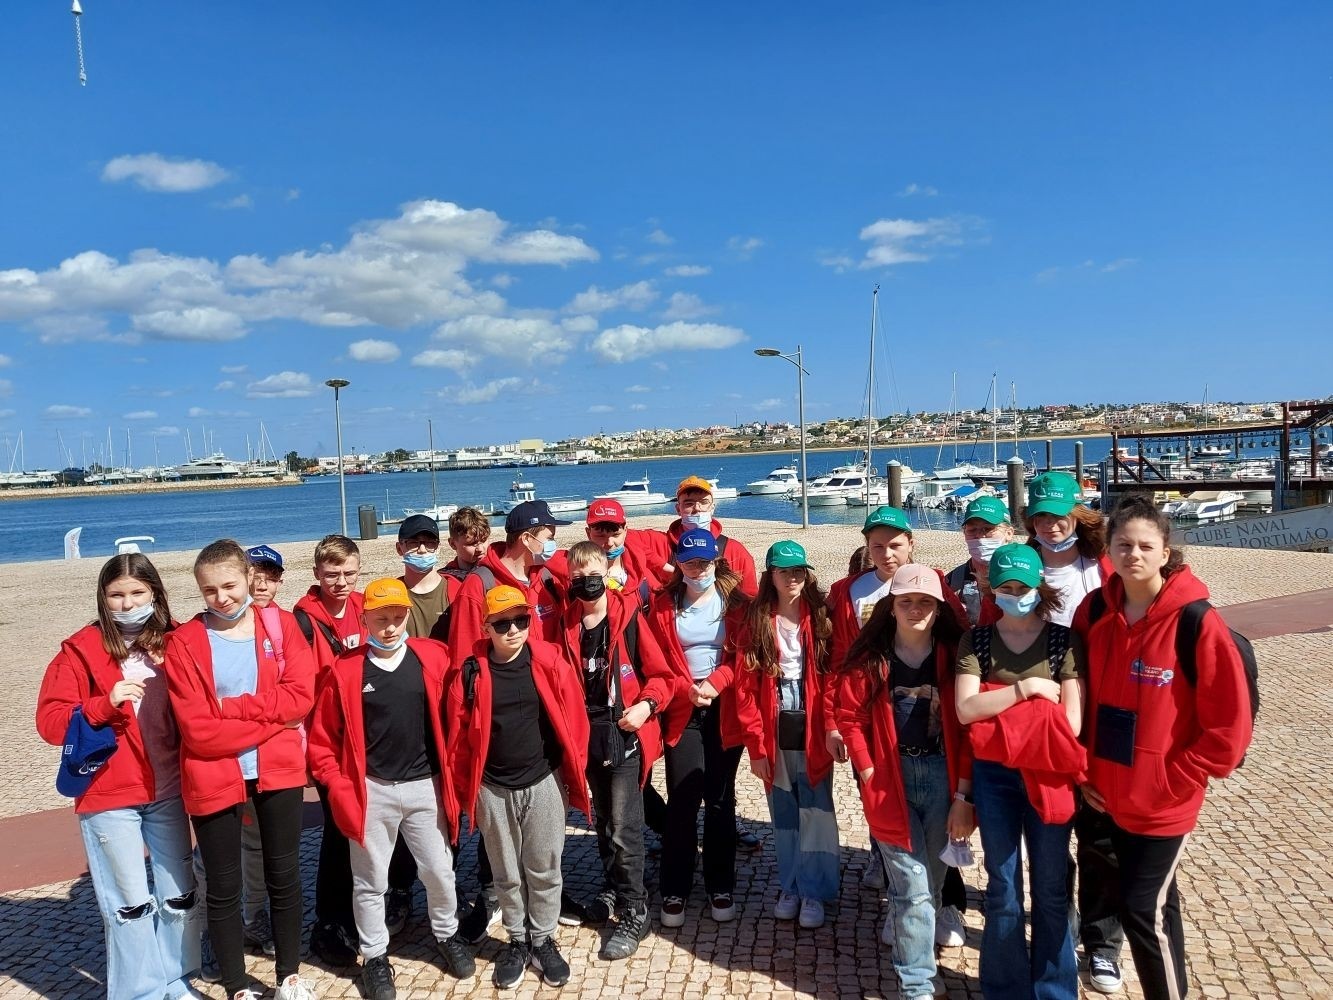 W dniach 8.03 do 18.03.2022 uczniowie Szkoły Podstawowej nr 2 w Pasłęku uczestniczyli w wyjeździe edukacyjnym do Portugali. Wyjazd odbył się w ramach programu Erasmus+ Flax, lin and rooth. Podczas pobytu w Portimao uczestniczyli w zajęciach edukacyjnych w partnerskiej szkole. Mieli też okazję zwiedzić piękny region Algarve, poznać jego historię i architekturę. Uczestnicy poznali kulturę, sposób życia, kulinaria i zwyczaje swoich portugalskich kolegów. Wyjazd był okazją do zdobywania wiedzy w atrakcyjny sposób. Dał też możliwość zacieśnienia przyjaźni międzynarodowych. Pobyt uczniów w Portugalii był doskonałą okazją do promocji naszego miasta i Szkoły Podstawowej nr 2 w Europie. Przed uczniami kolejny wyjazd, już w maju uczestnicy projektu odwiedzą kolejny partnerski kraj - Francję a tam, piękną Bretanię.